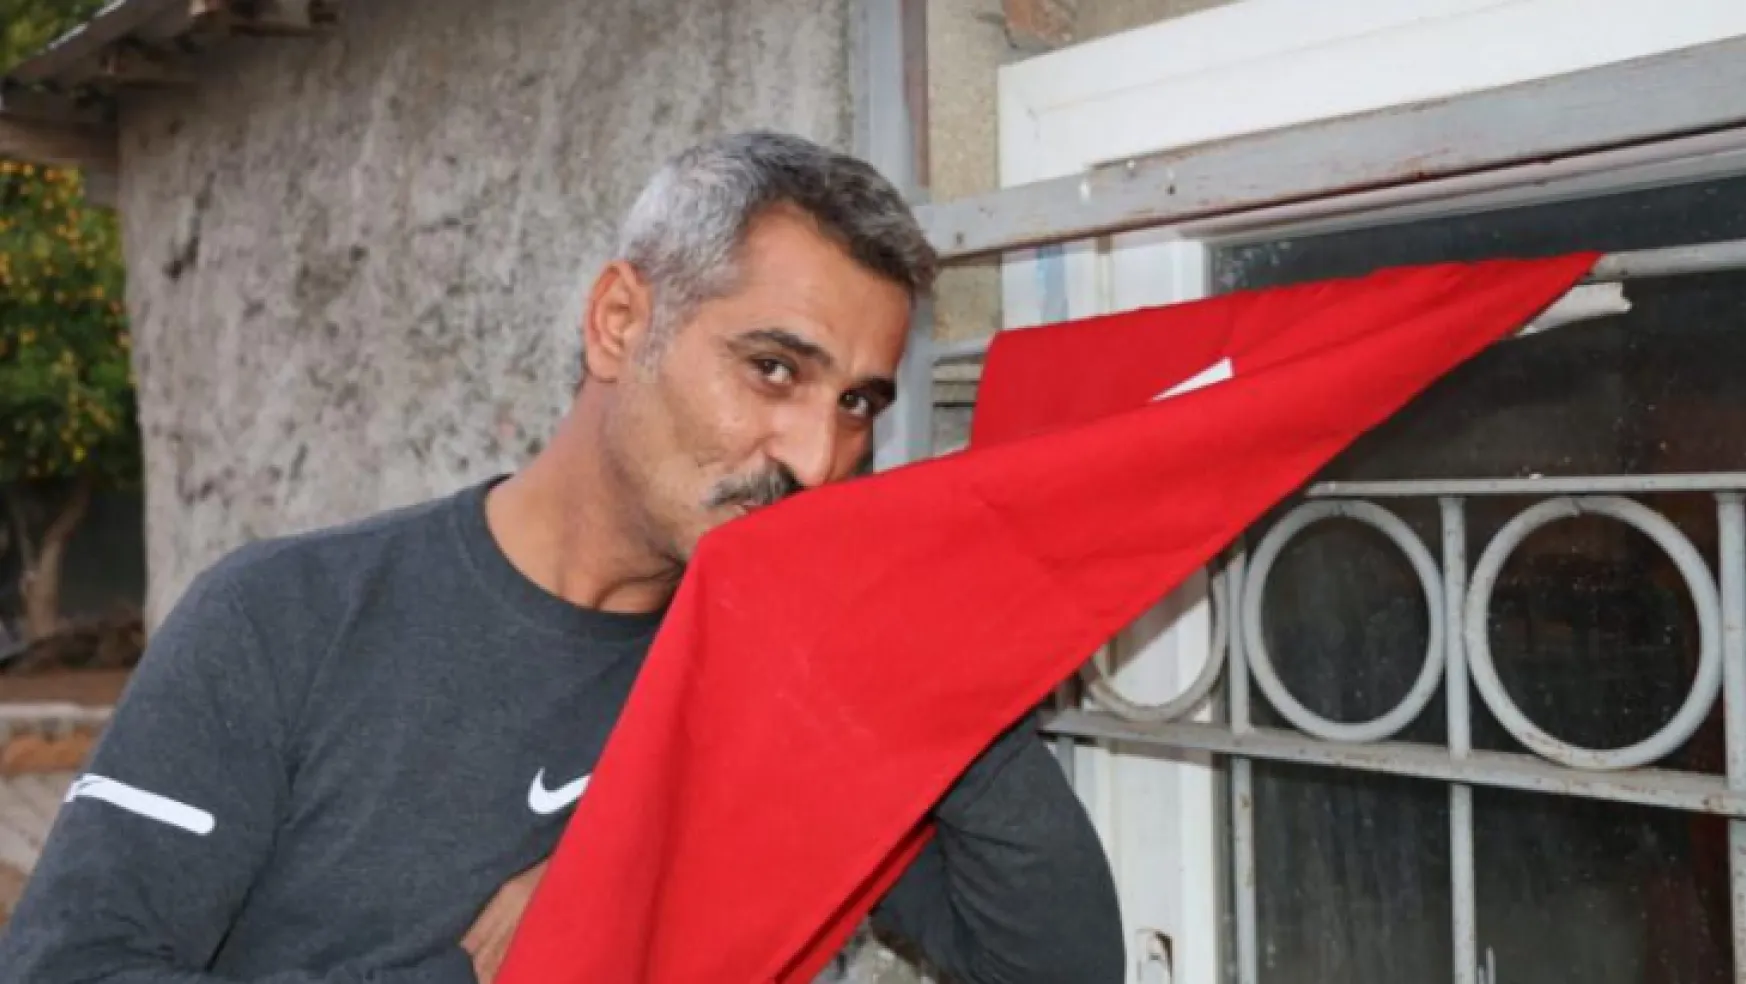 İYİ Partili Türkkan'ın küfrettiği şehit yakınının kardeşi konuştu